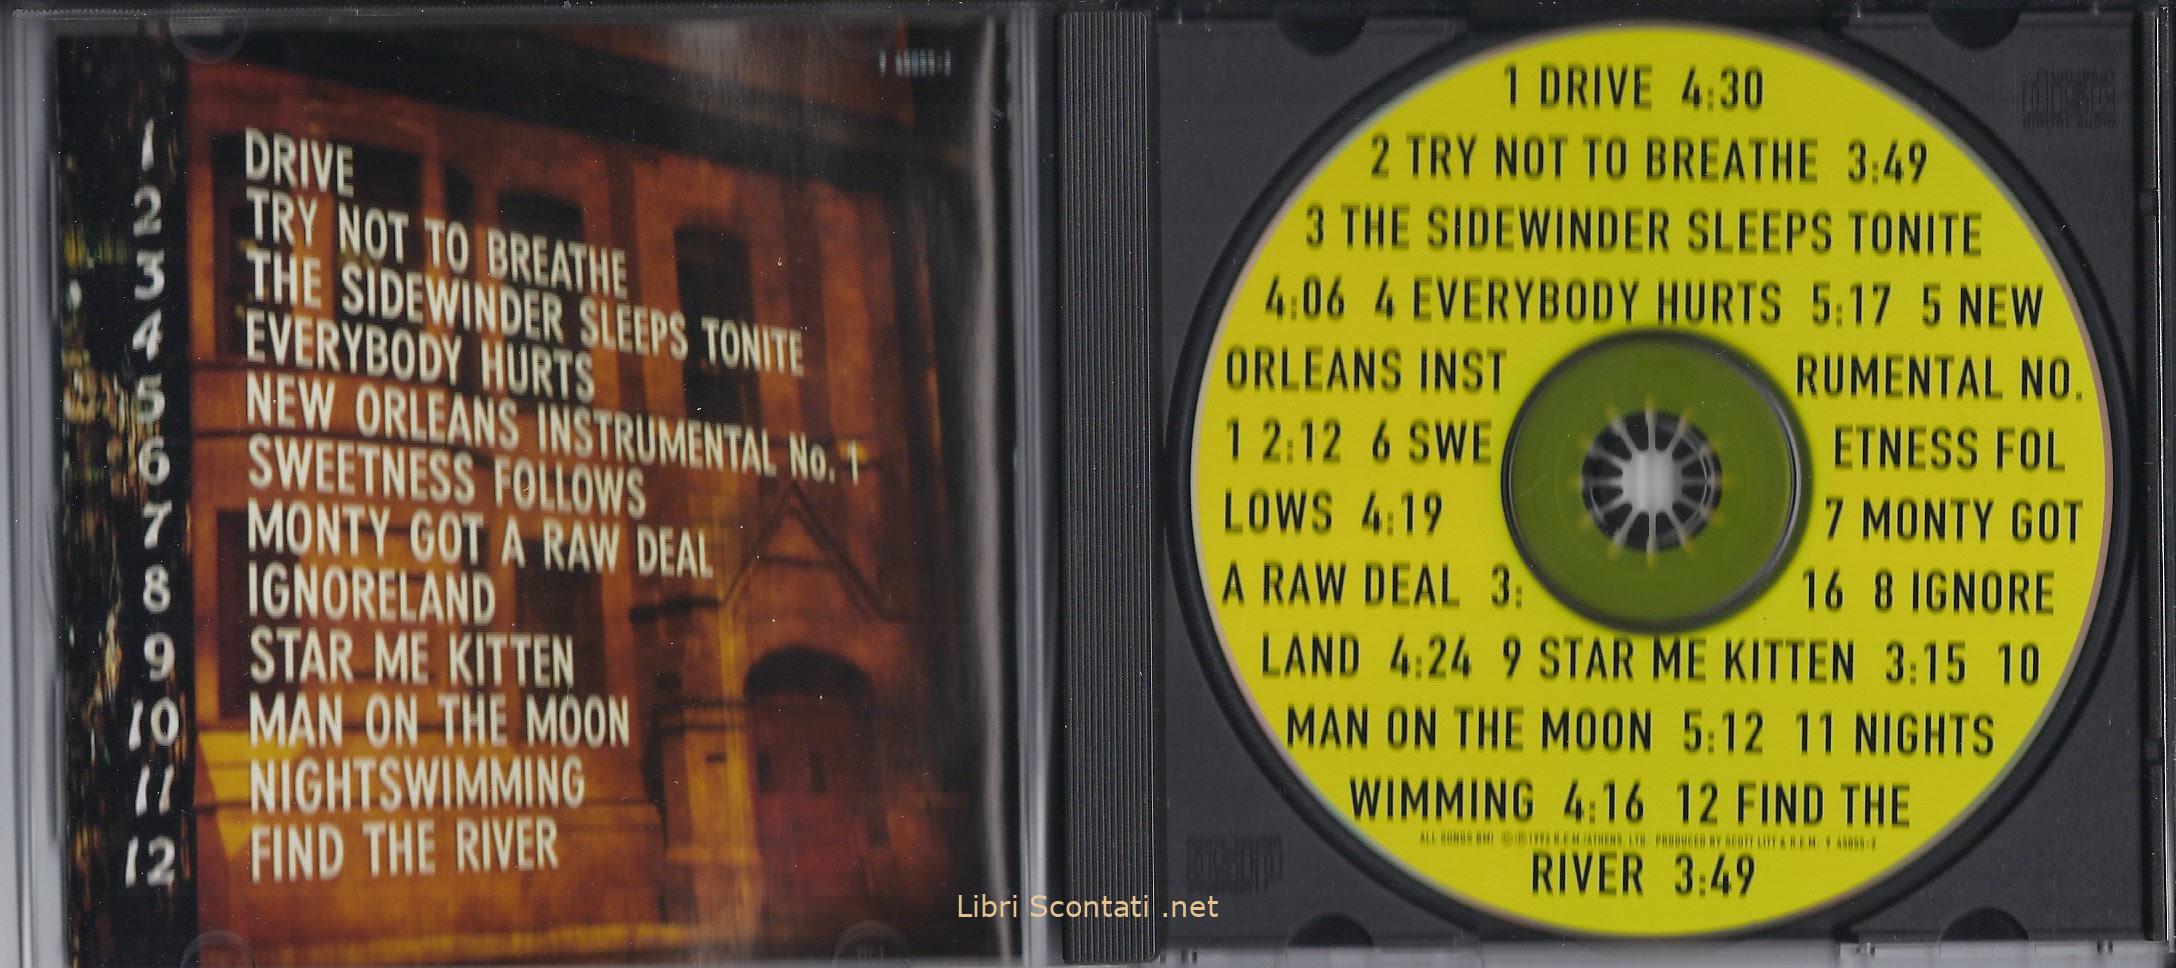 R.E.M. - Automatic for the people. CD USA. Musica - Libri Scontati .net